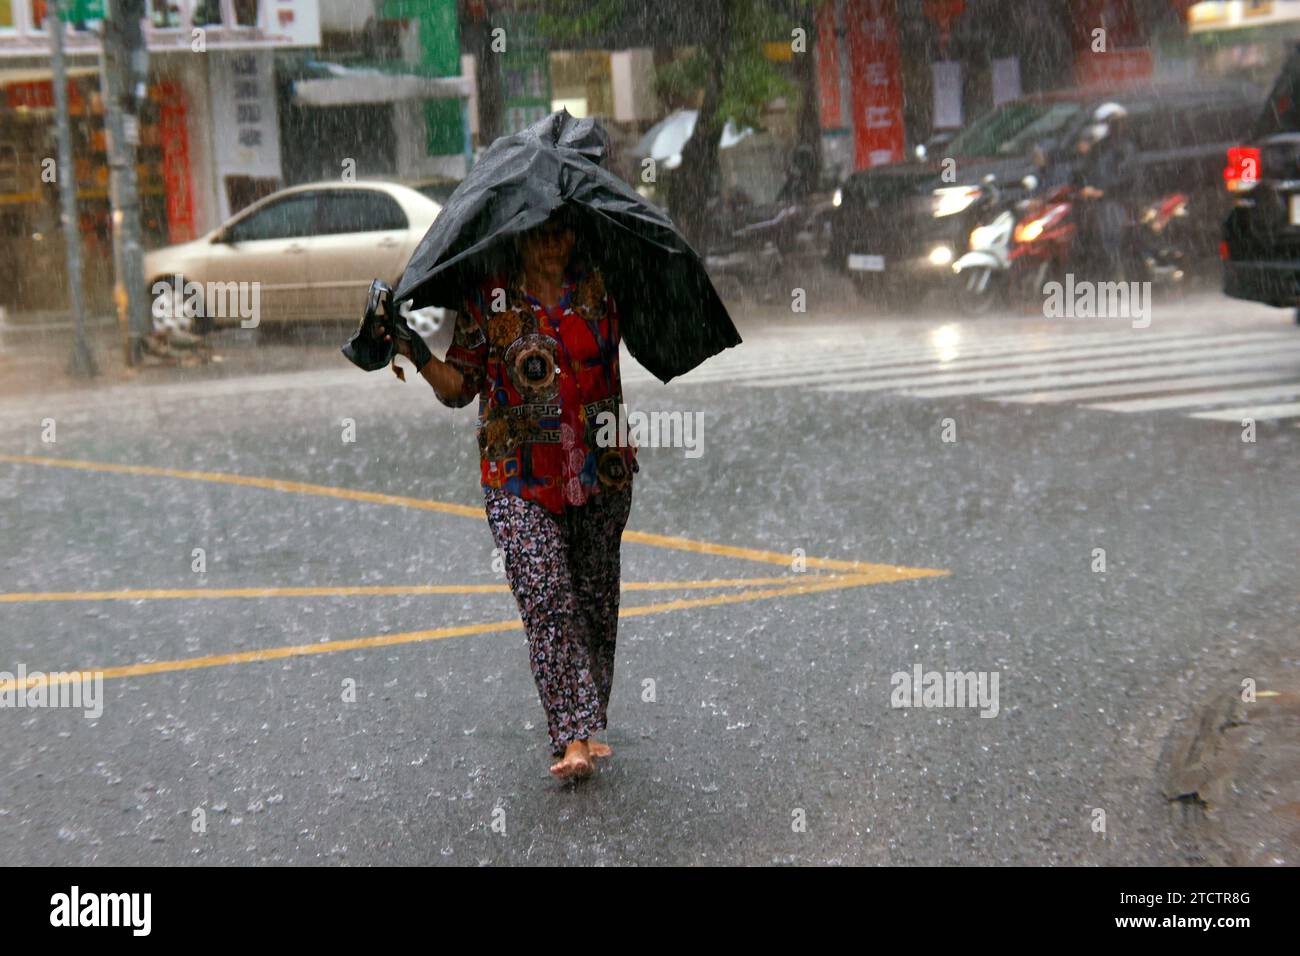 Saison Monsun. Starker Regen und Wasserabfall auf der Straße. Stockfoto